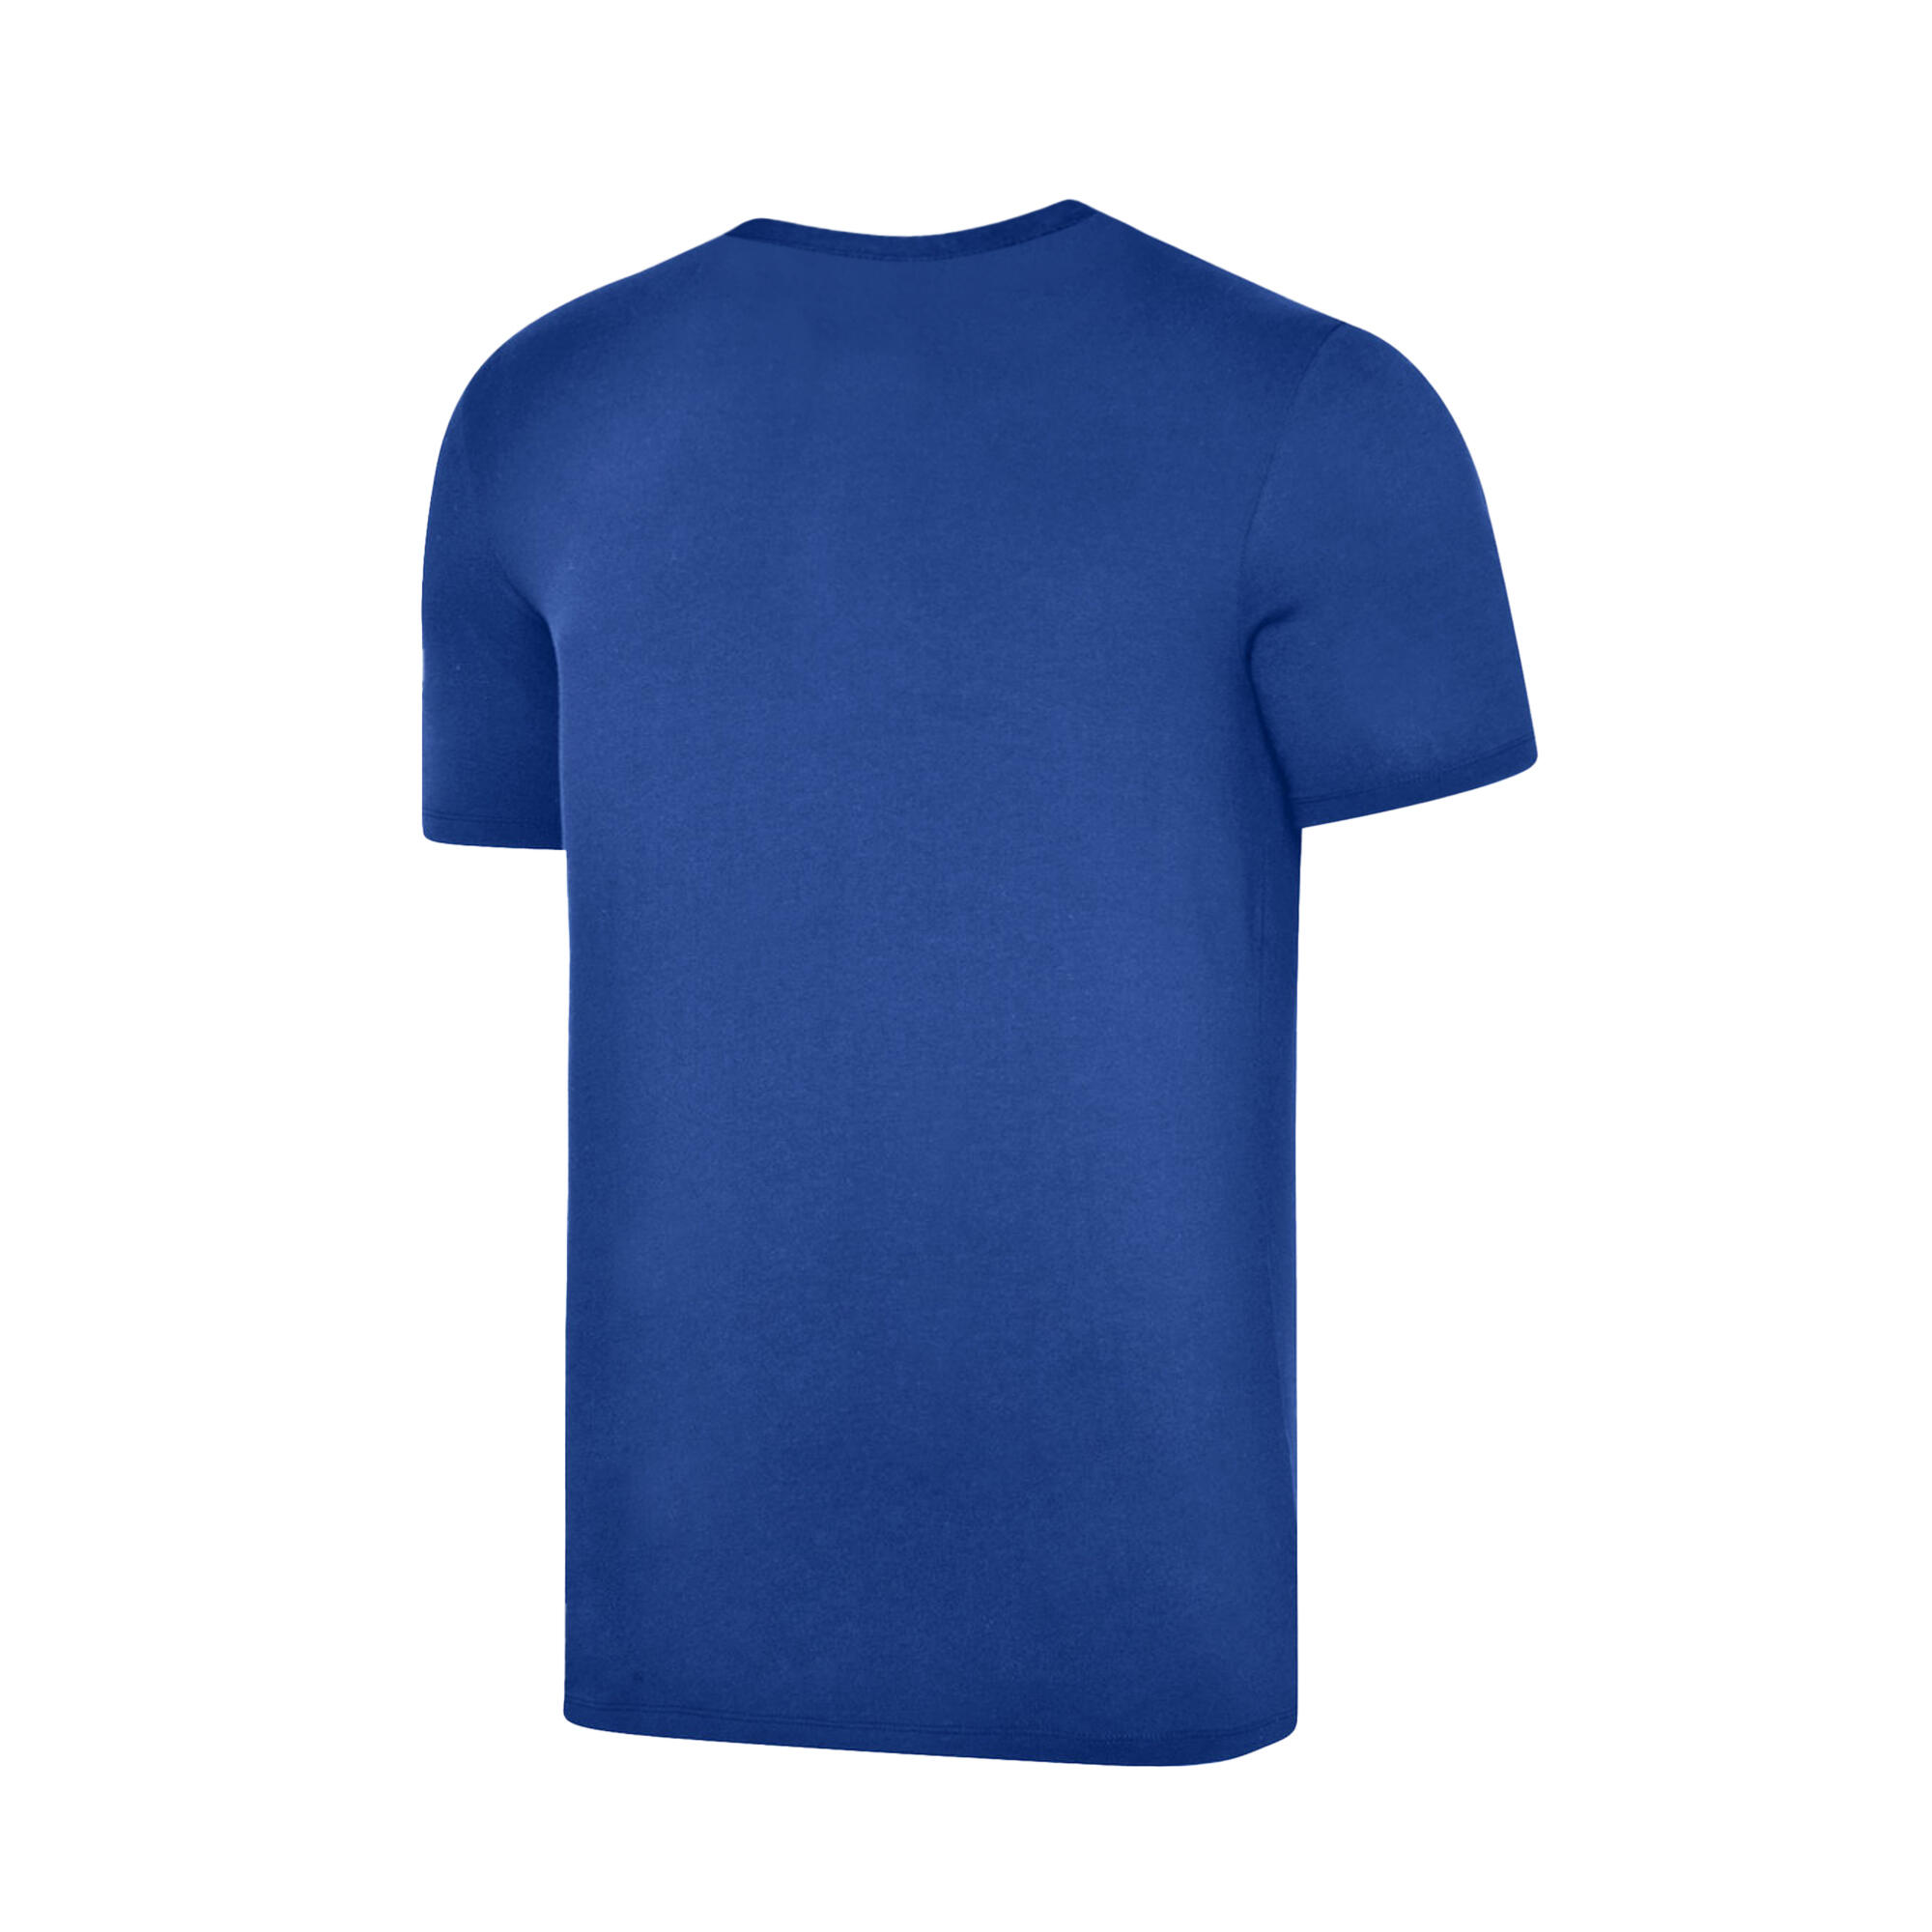 Mens Club Leisure TShirt (Royal Blue/White) 2/4